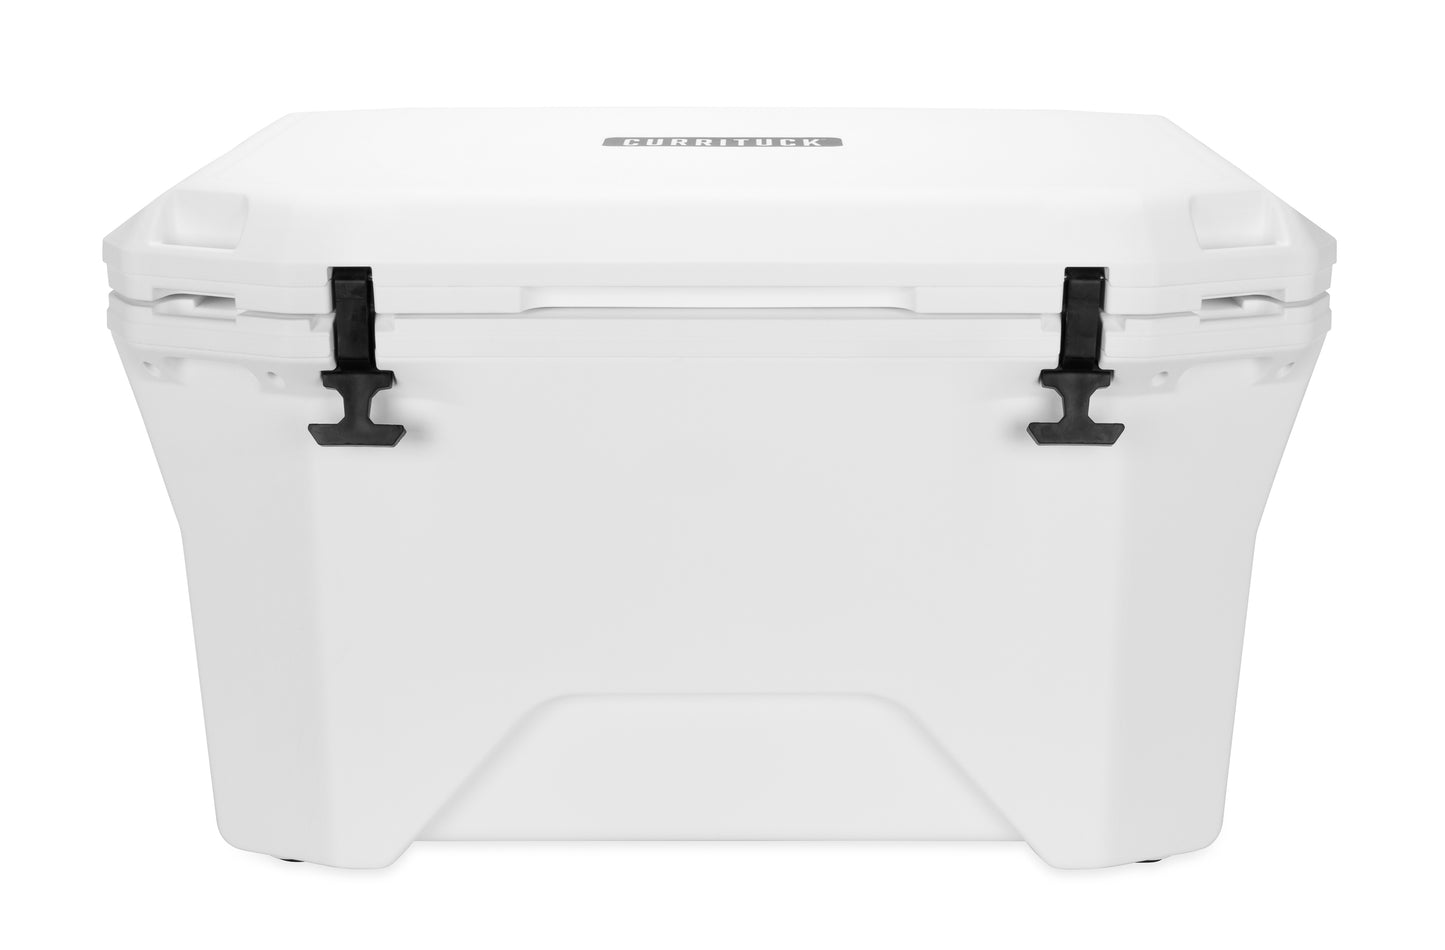 Currituck 30 and 50 Quart Premium Coolers - White